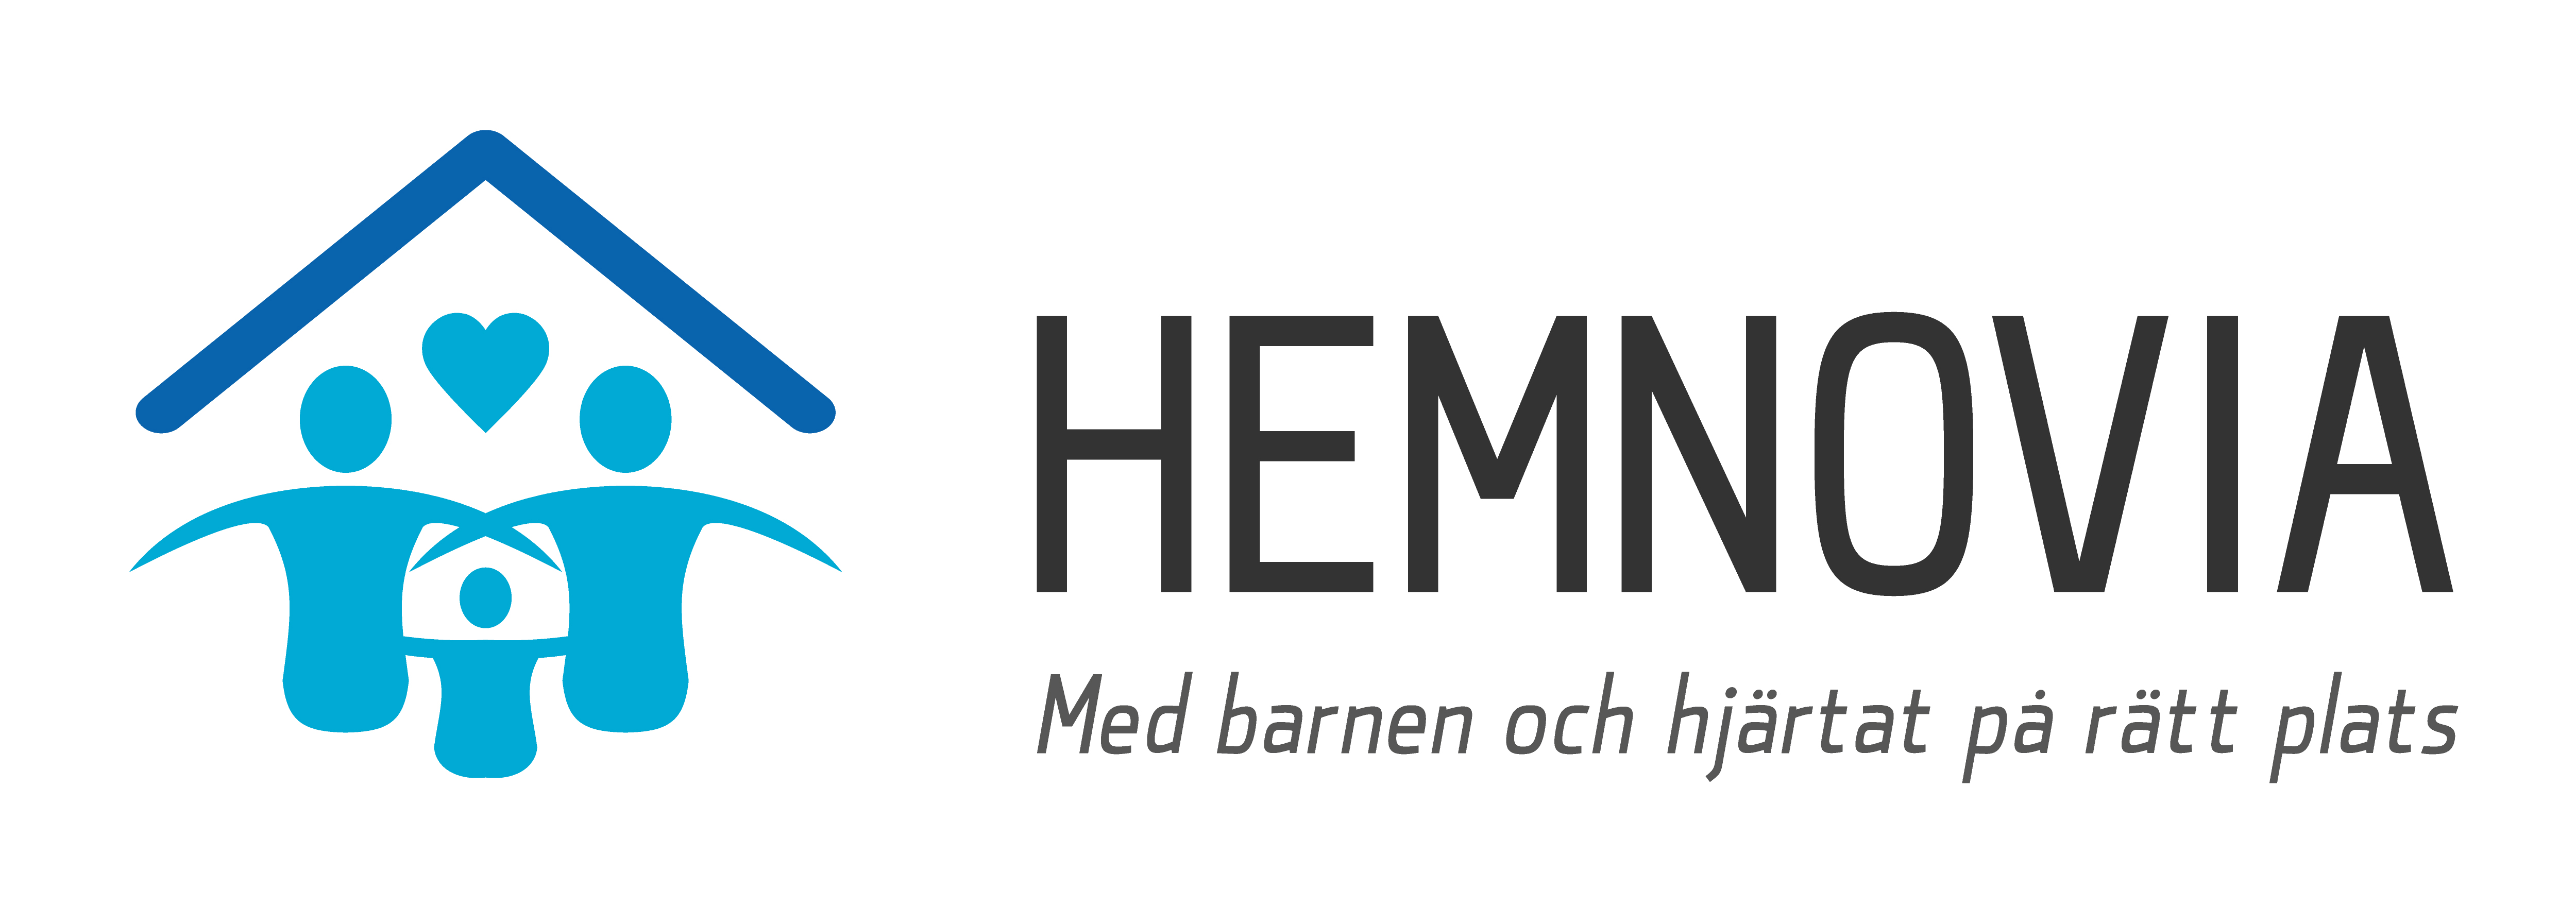 logotyp Hemnovia